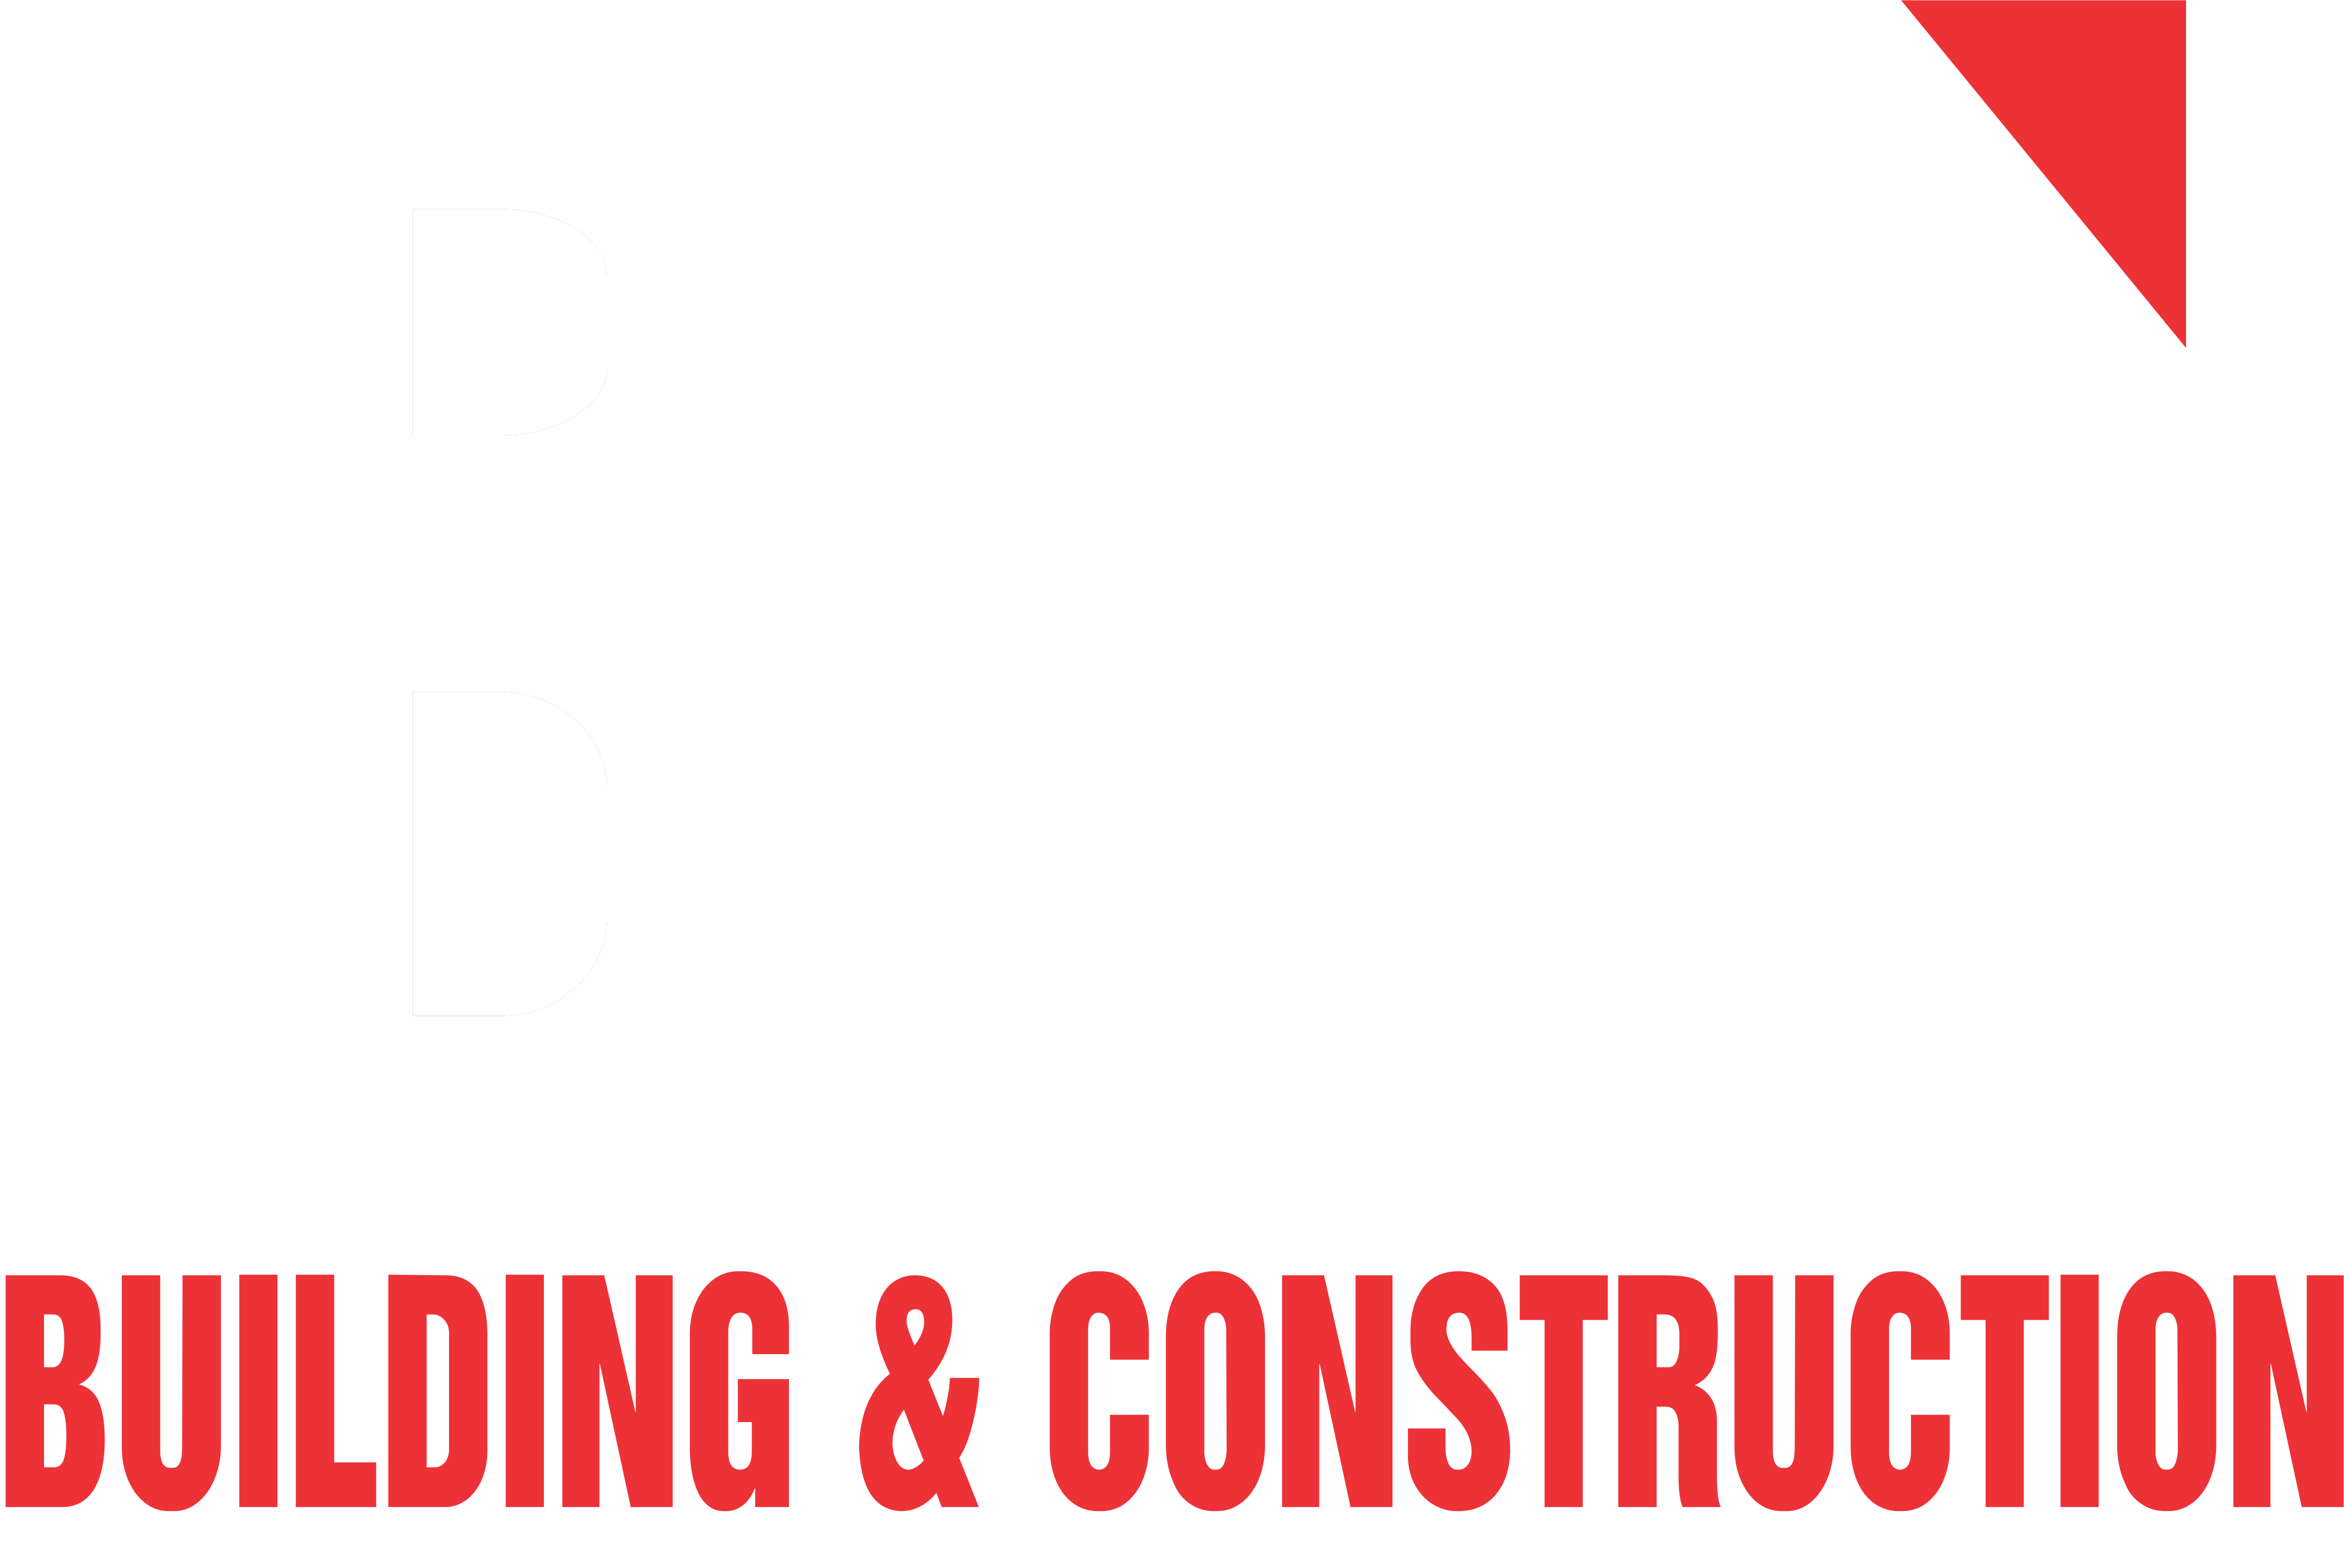 Bhi Logo - logo bhi white on black - BHI Construction